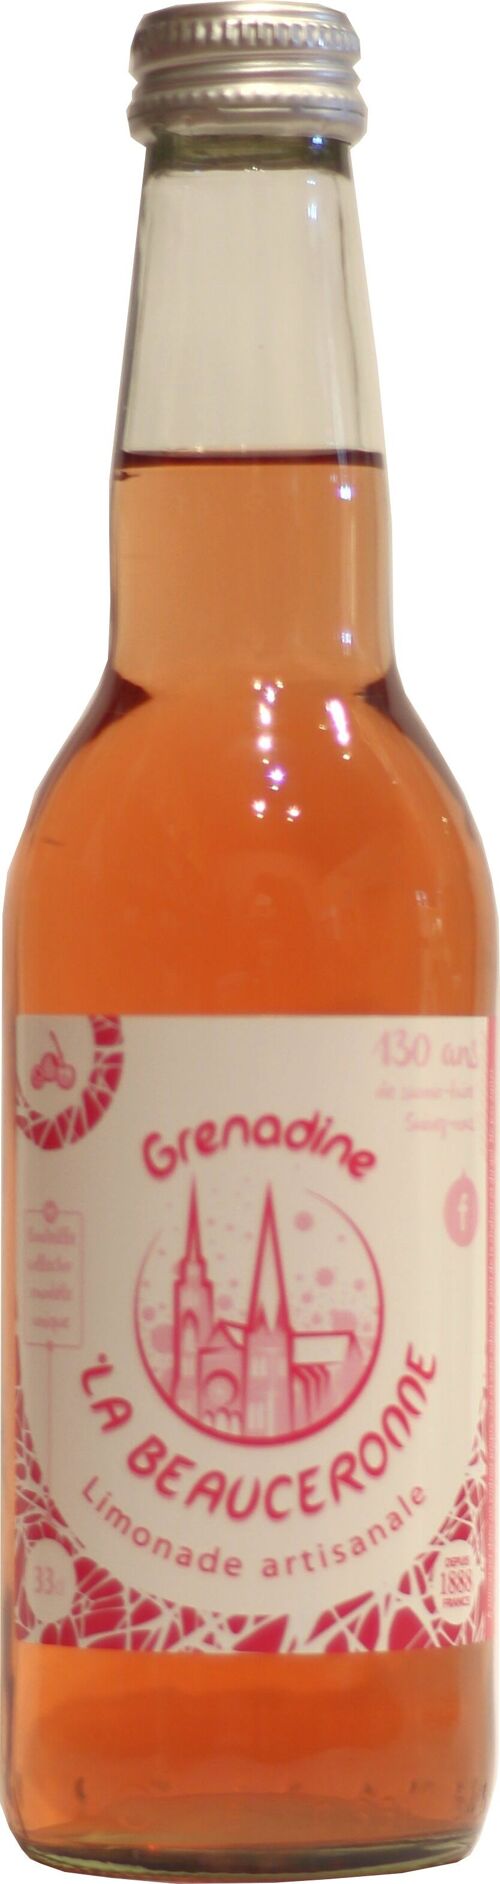 Limonade La Beauceronne grenadine à l'ancienne 33cl